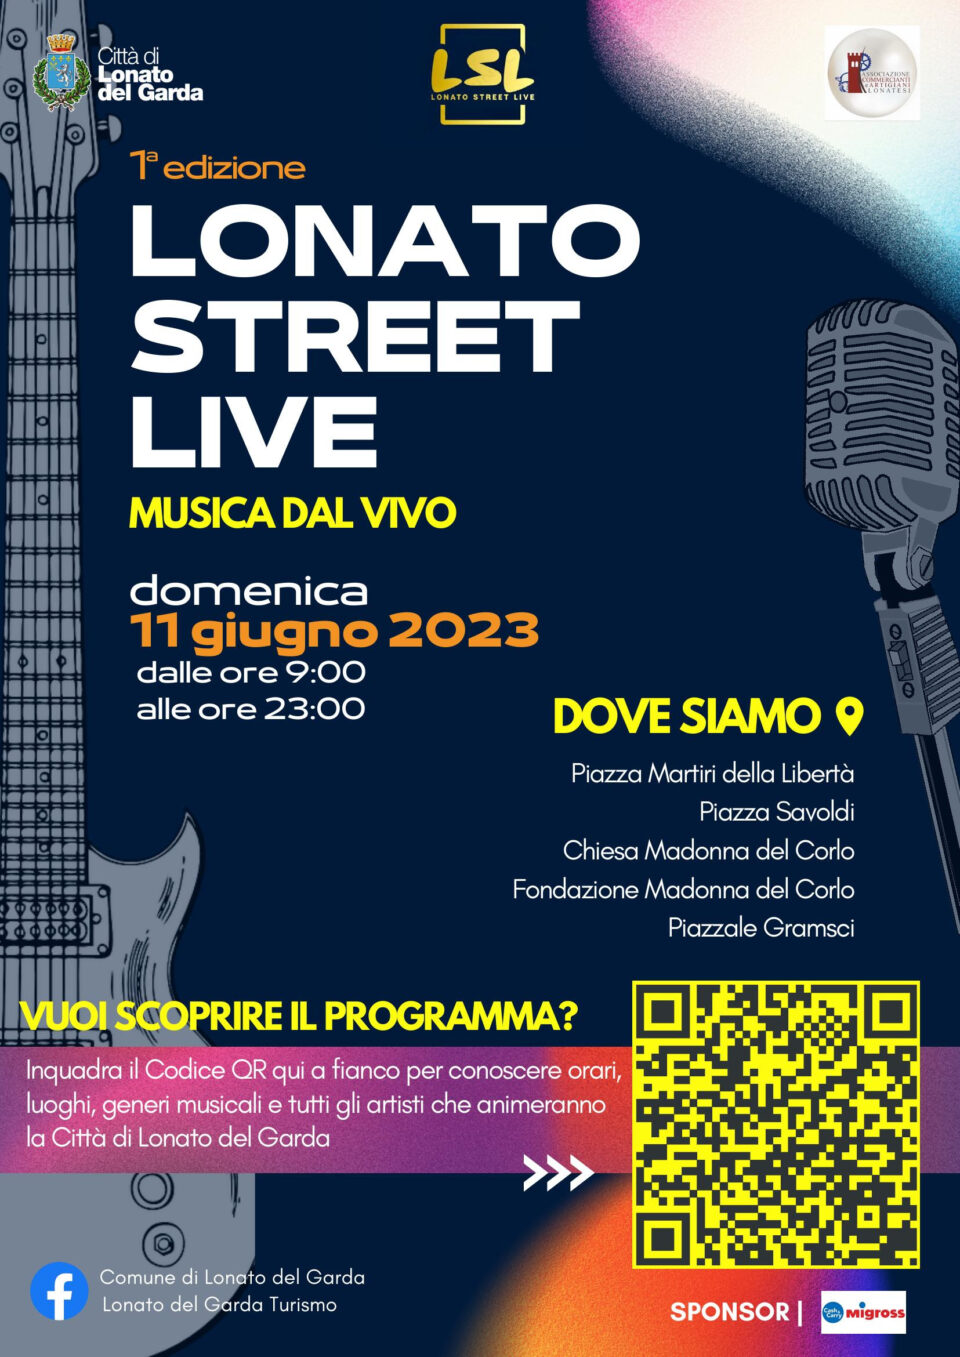 Lonato Street Live: l’evento di musica dal vivo che domenica 11 giugno animerà tutta la Città di Lonato del Garda